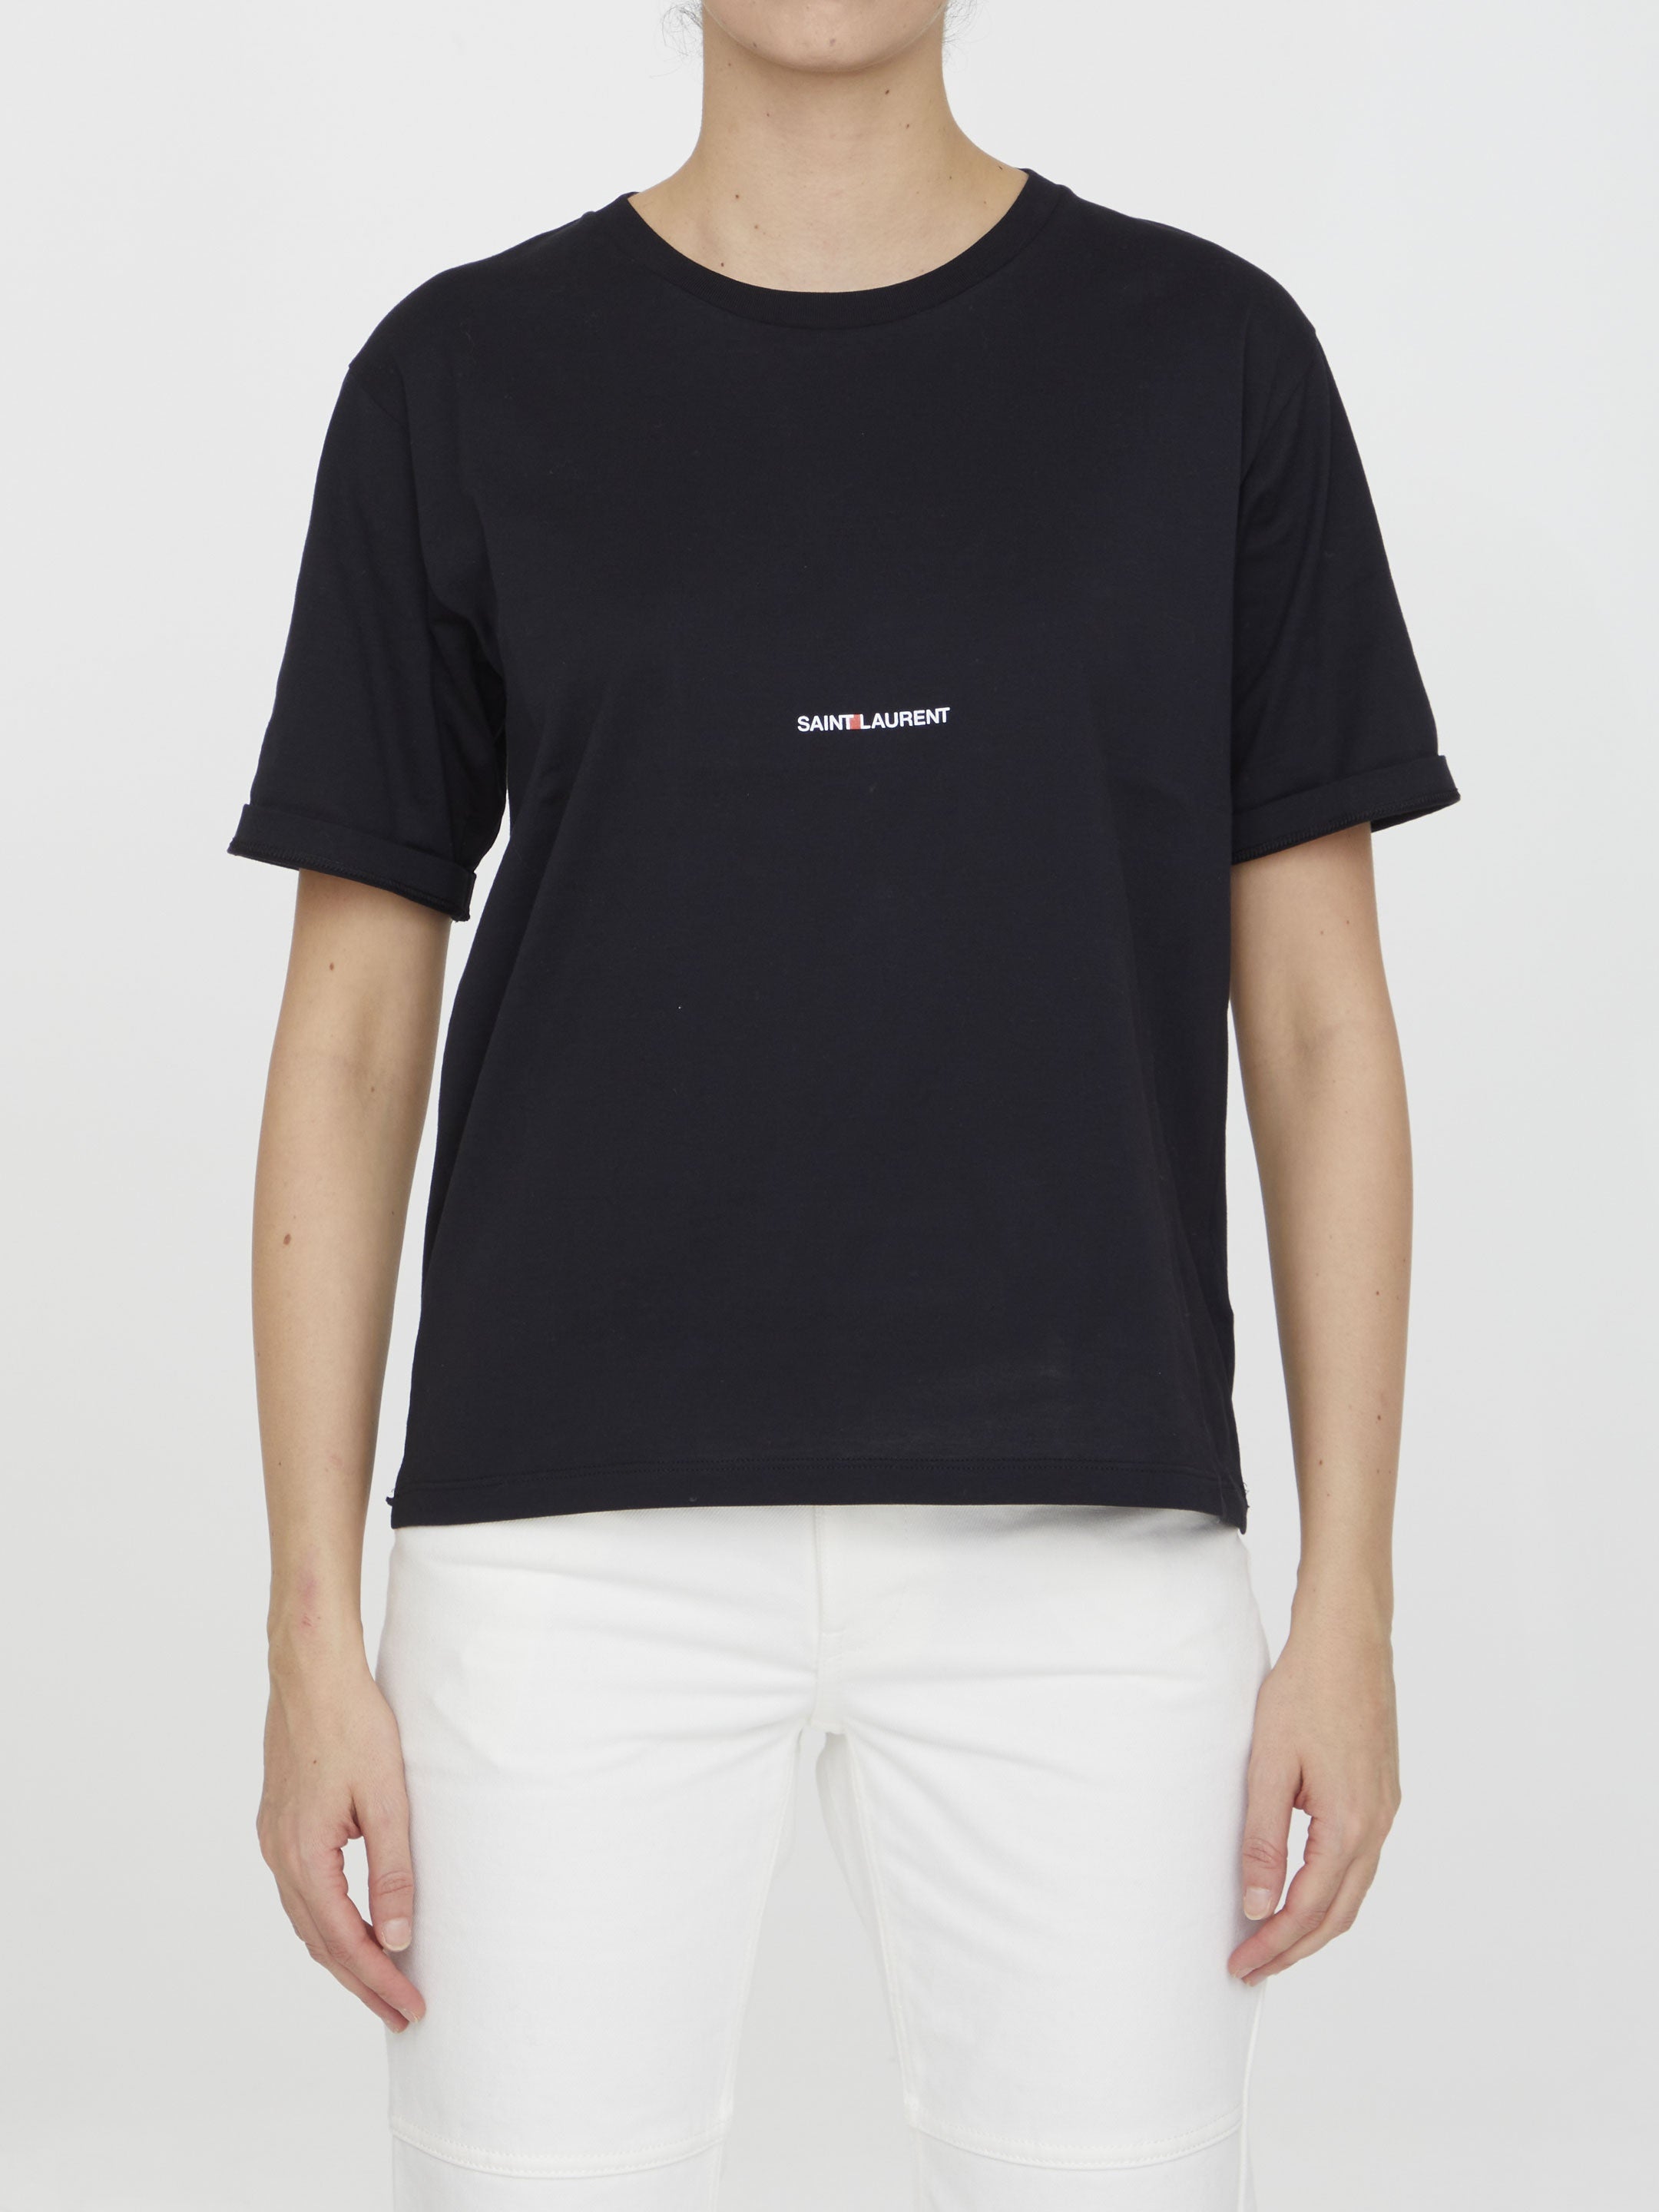 SAINT-LAURENT-OUTLET-SALE-Cotton-t-shirt-Shirts-S-BLACK-ARCHIVE-COLLECTION.jpg